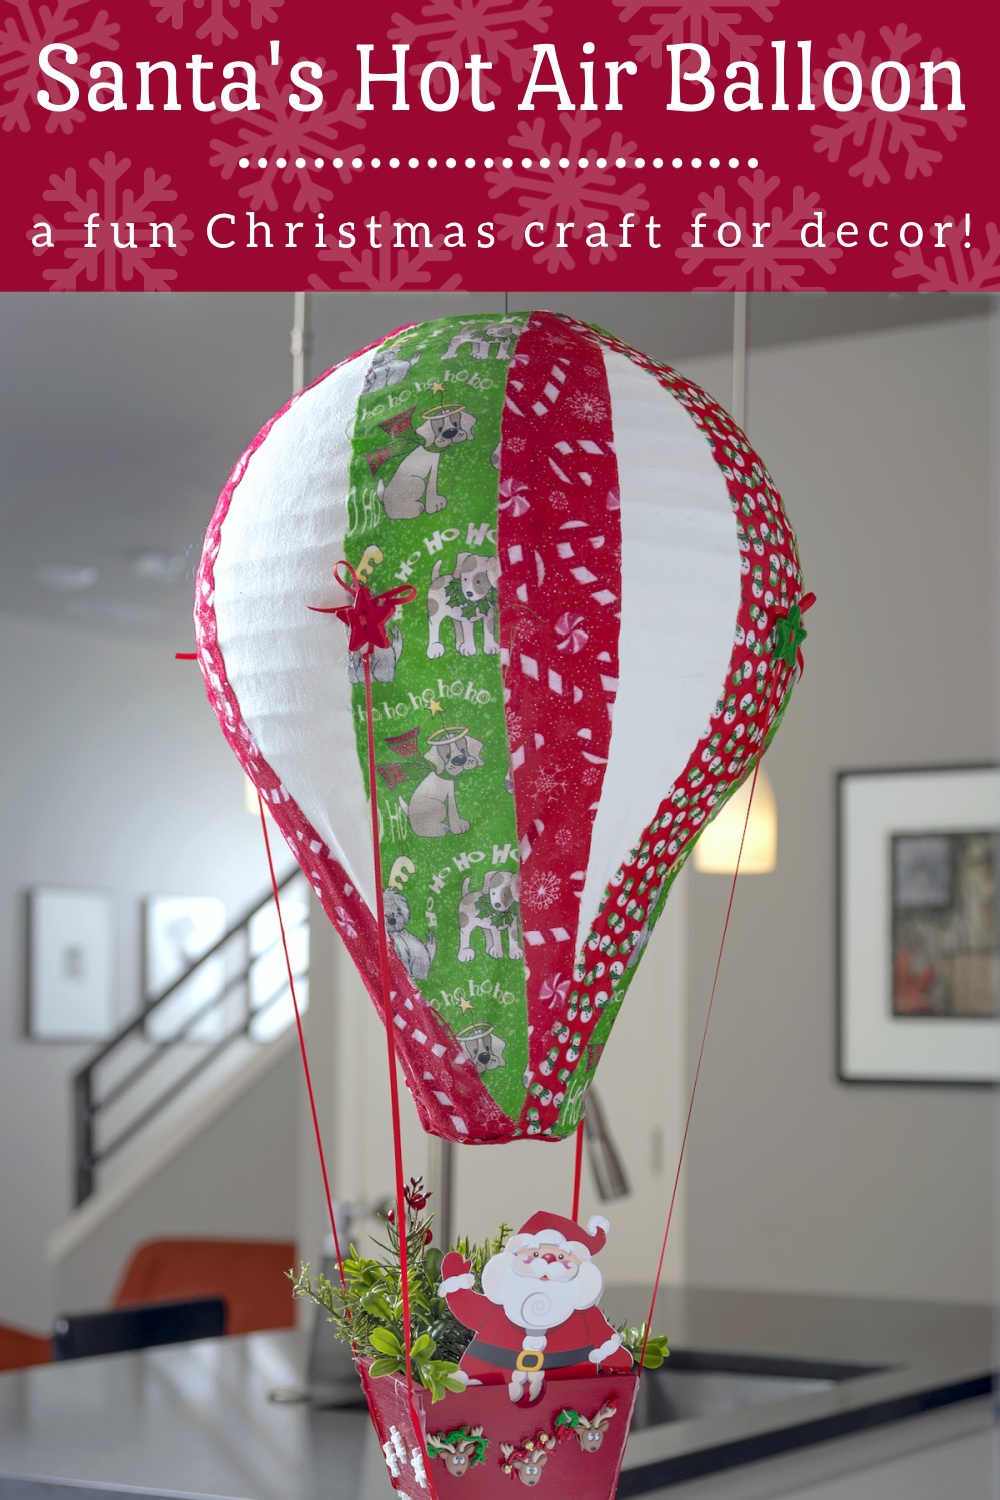 Santa's Hot Air Balloon